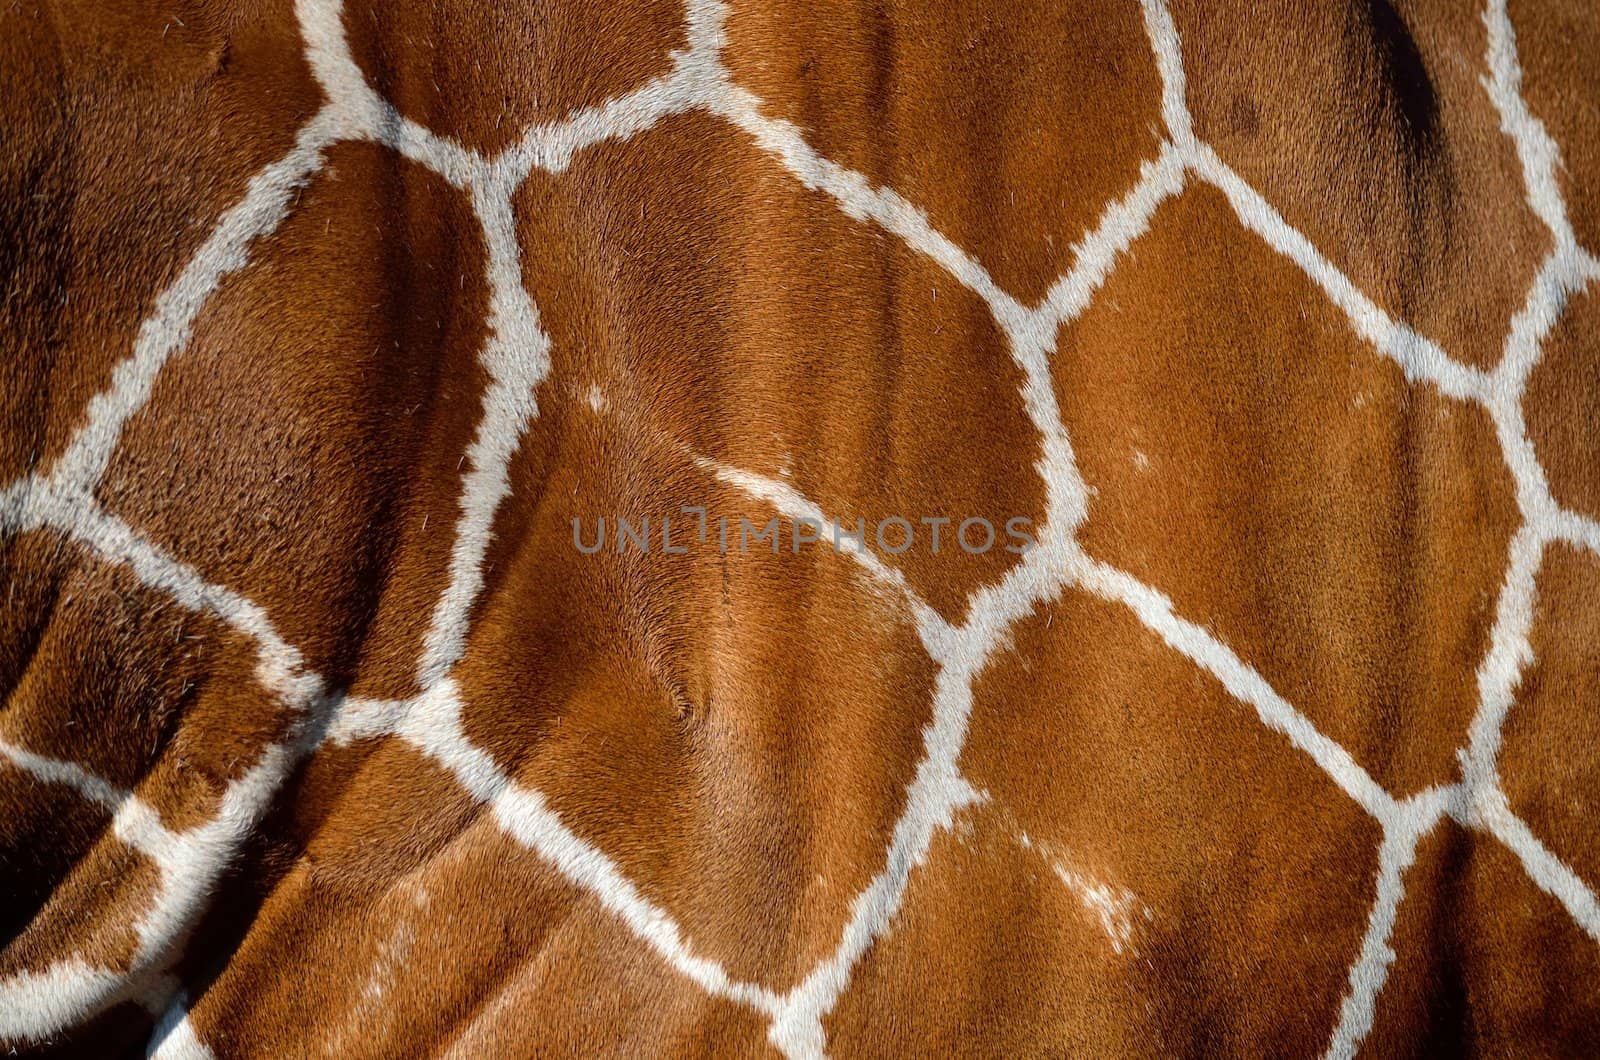 A close up of a giraffe's skin